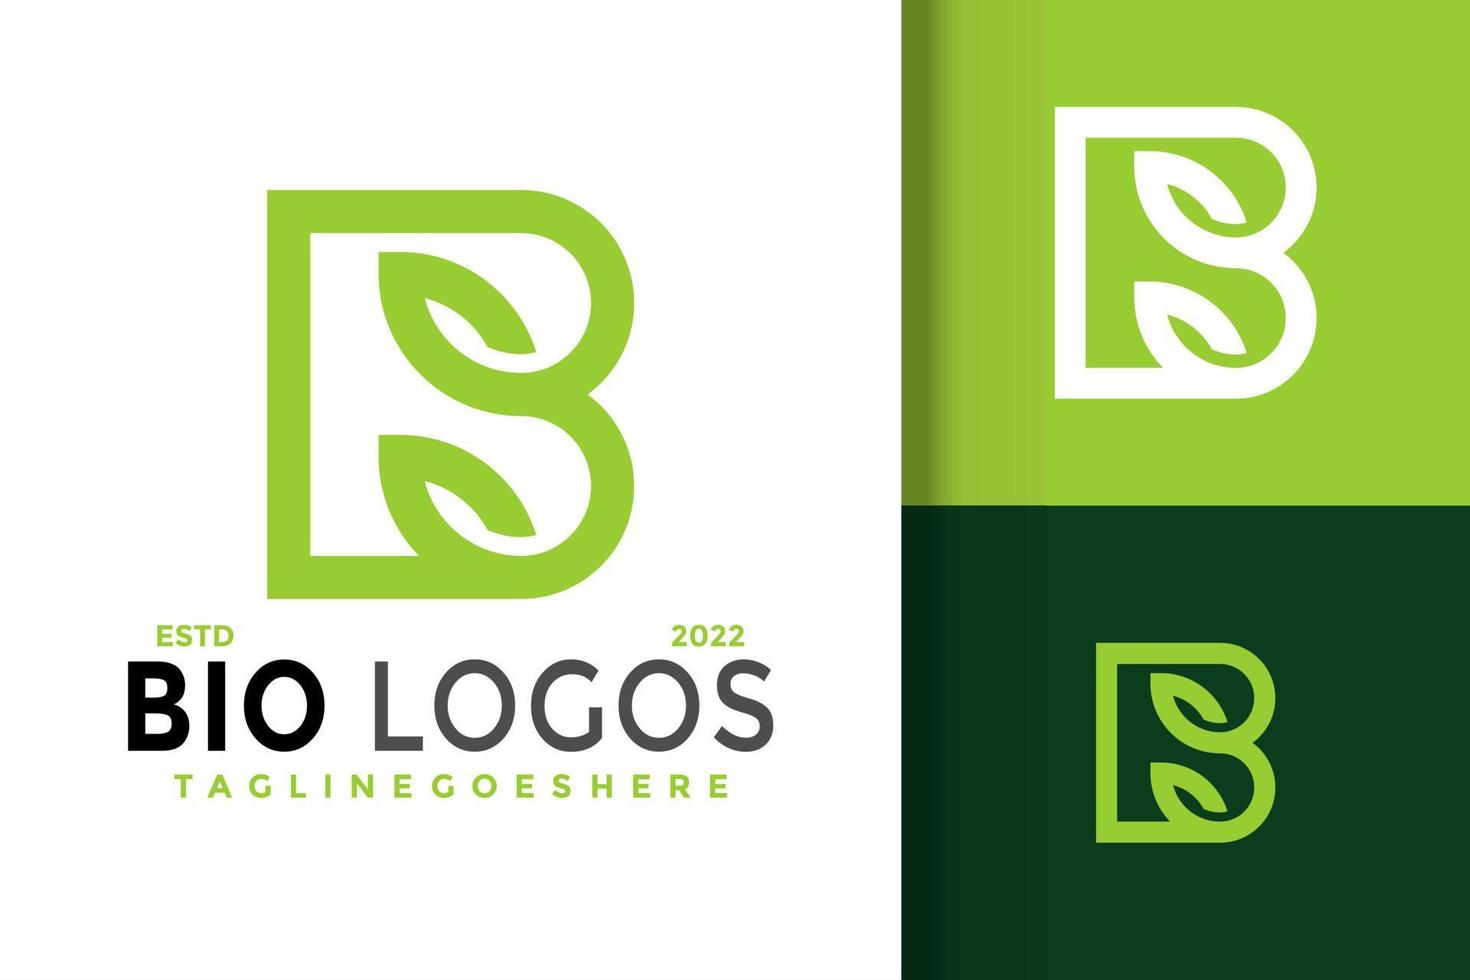 création de logo biologique lettre b, vecteur de logos d'identité de marque, logo moderne, modèle d'illustration vectorielle de dessins de logo